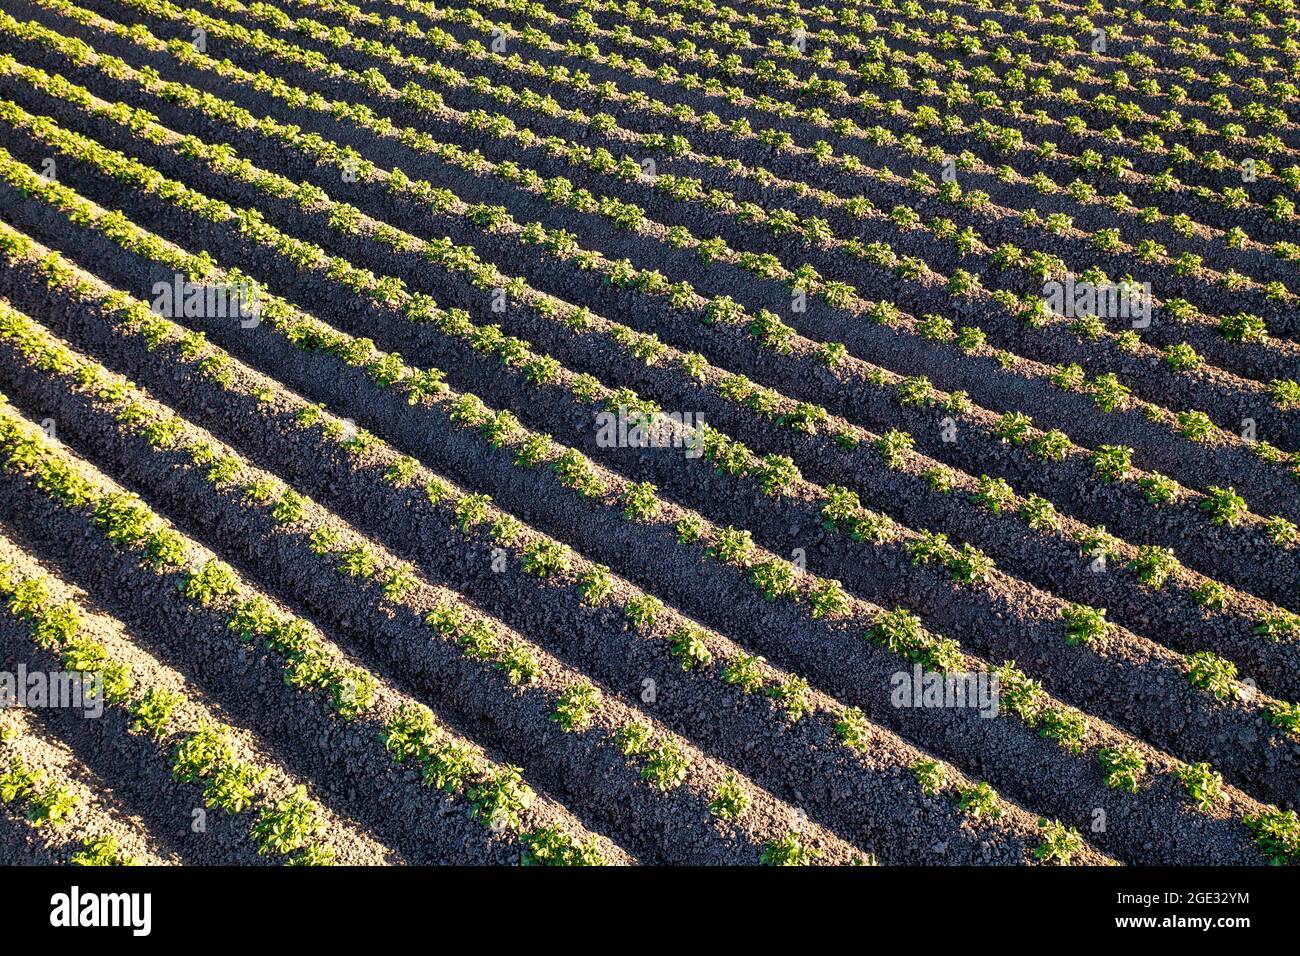 Pays-Bas, Noordbeemster, plants de pommes de terre. POLDER de Beemster. Patrimoine mondial de l'UNESCO. Banque D'Images